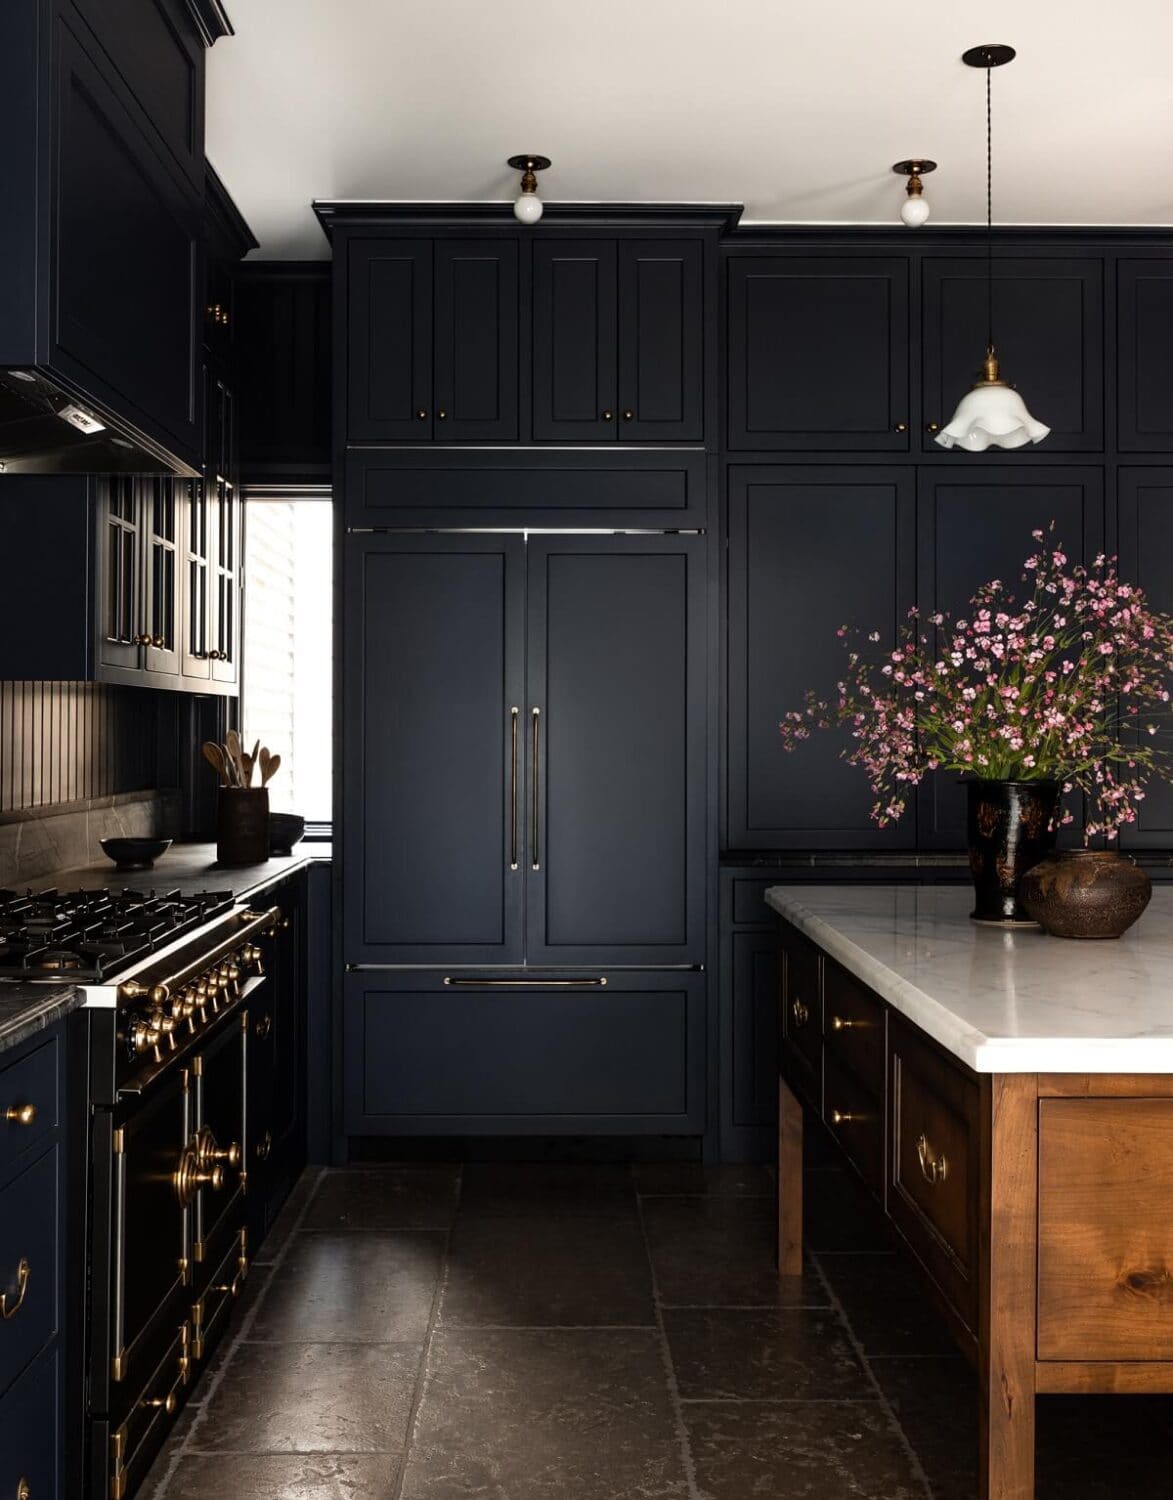 dark navy kitchen cabinets with a cherry wood kitchen island